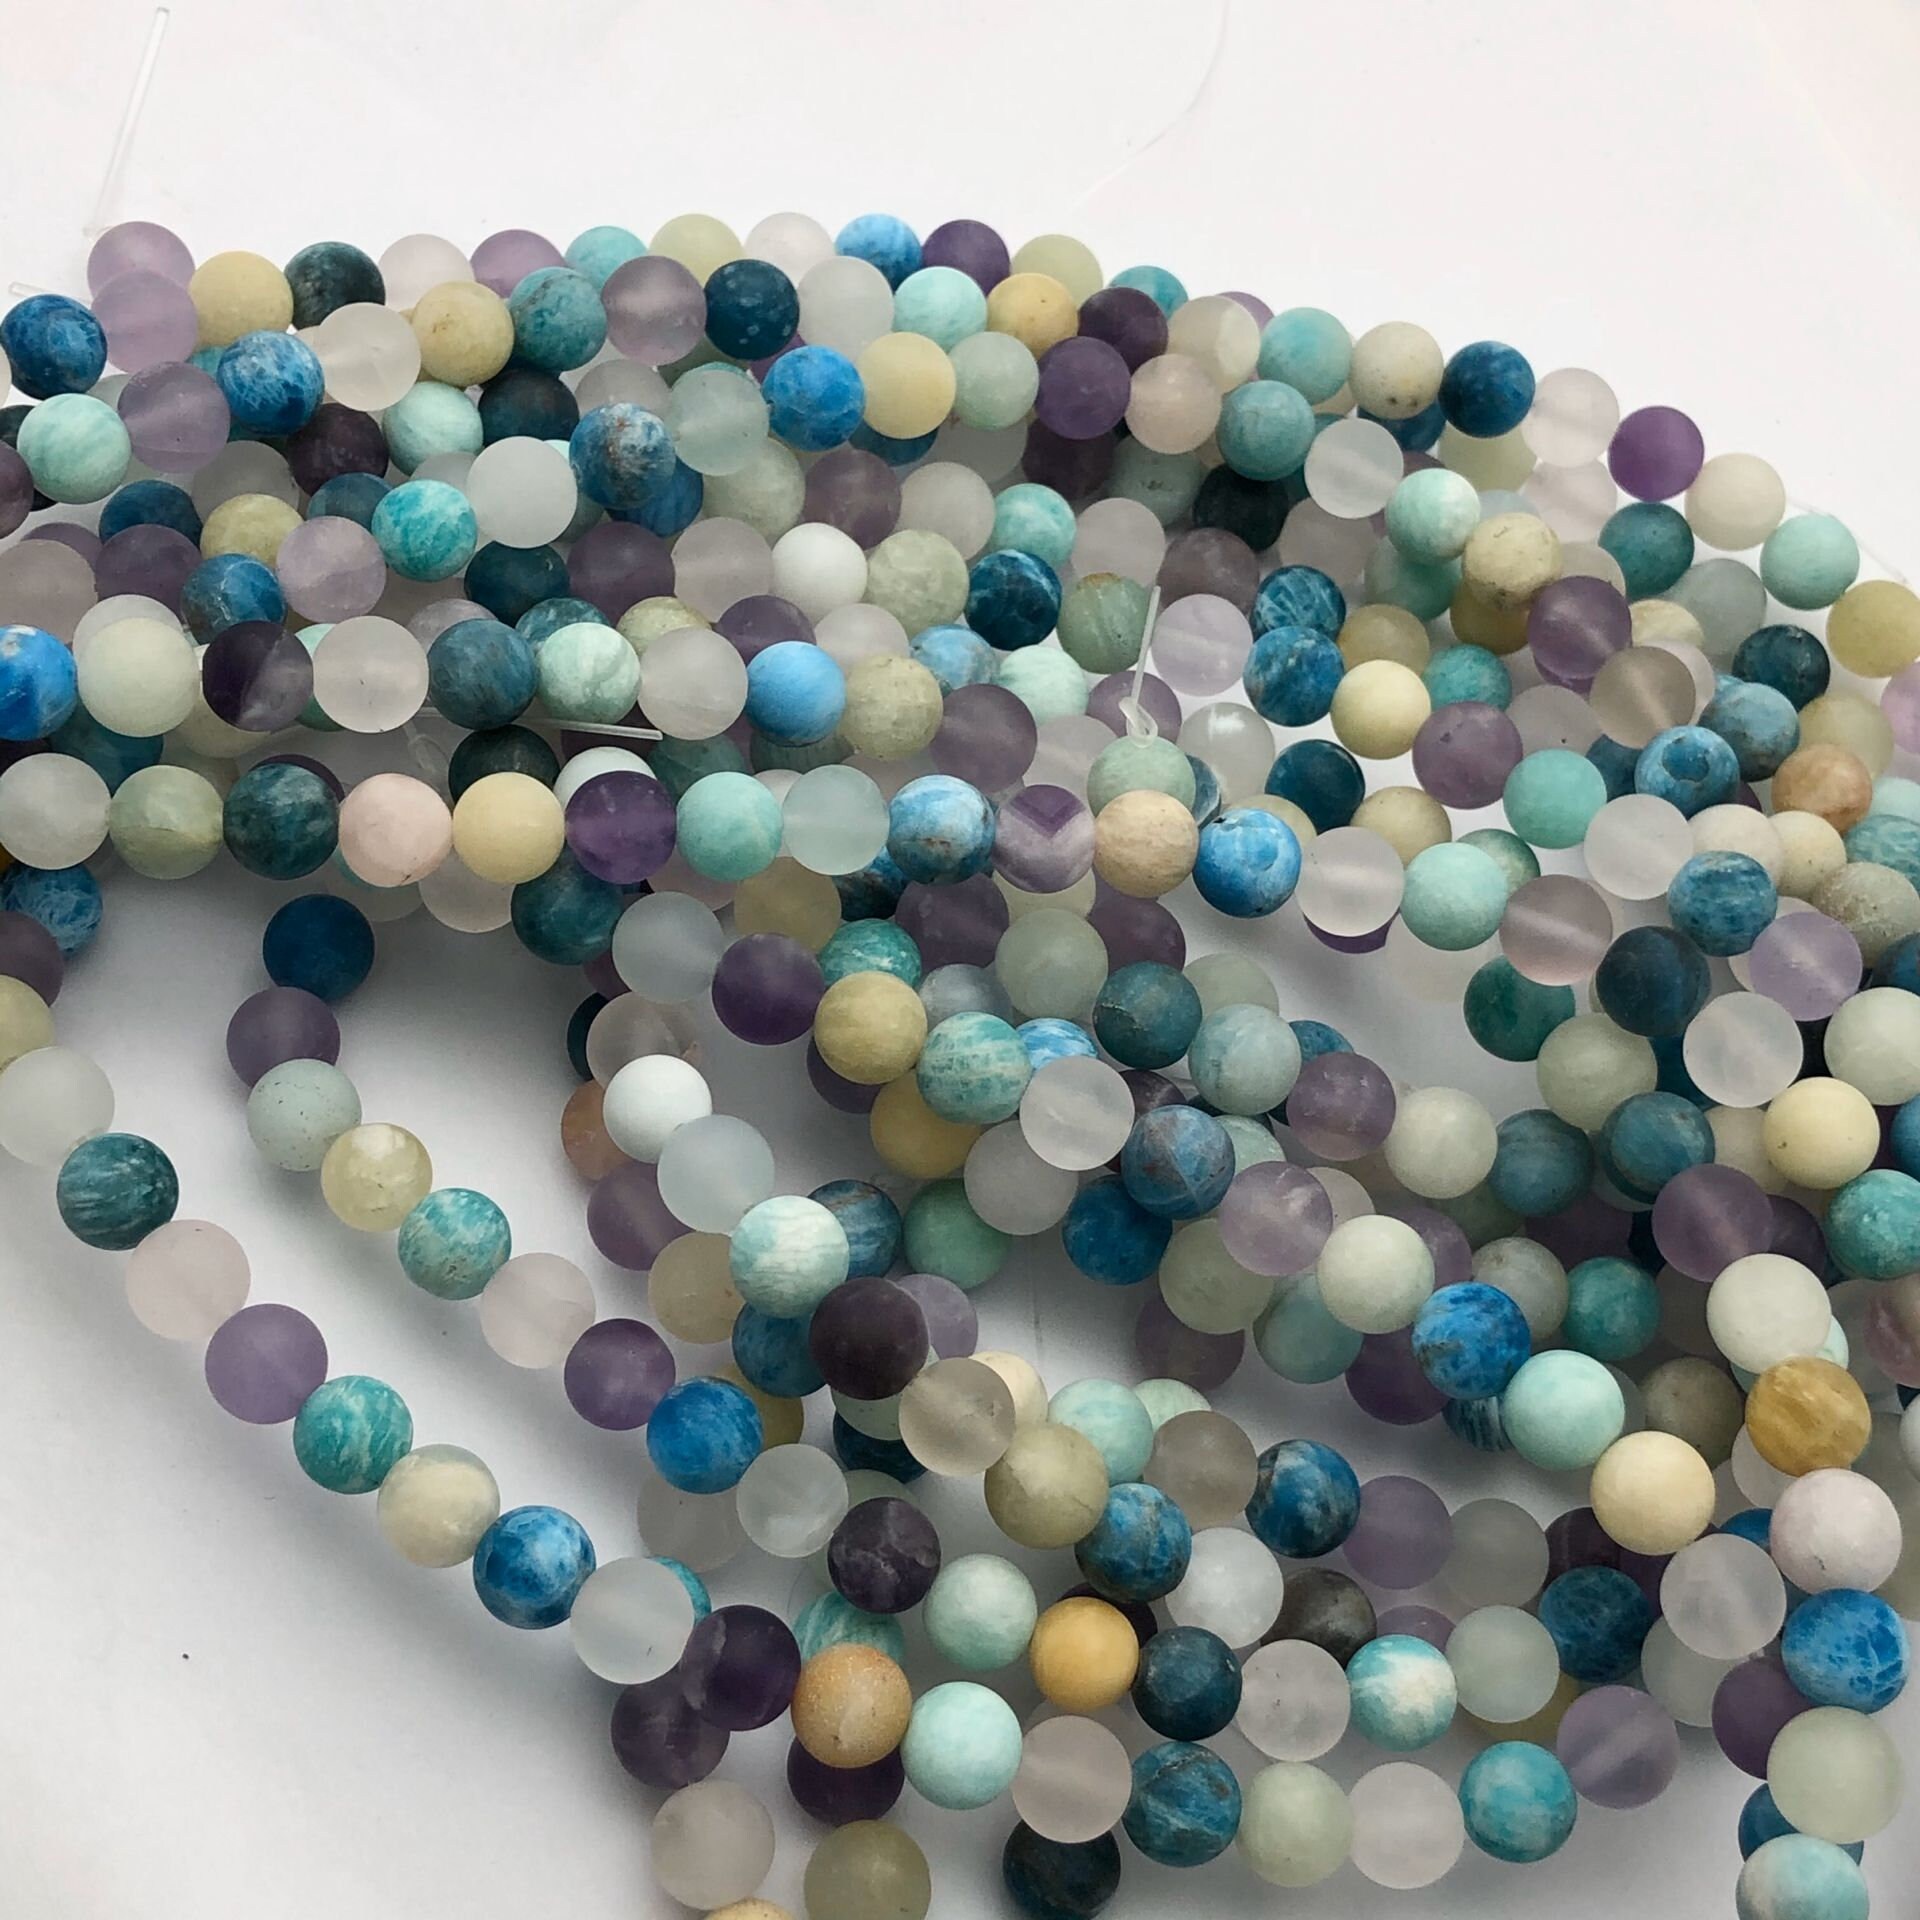 8mm multi stones round beads with rhinestone inlaid 15.5" strand 